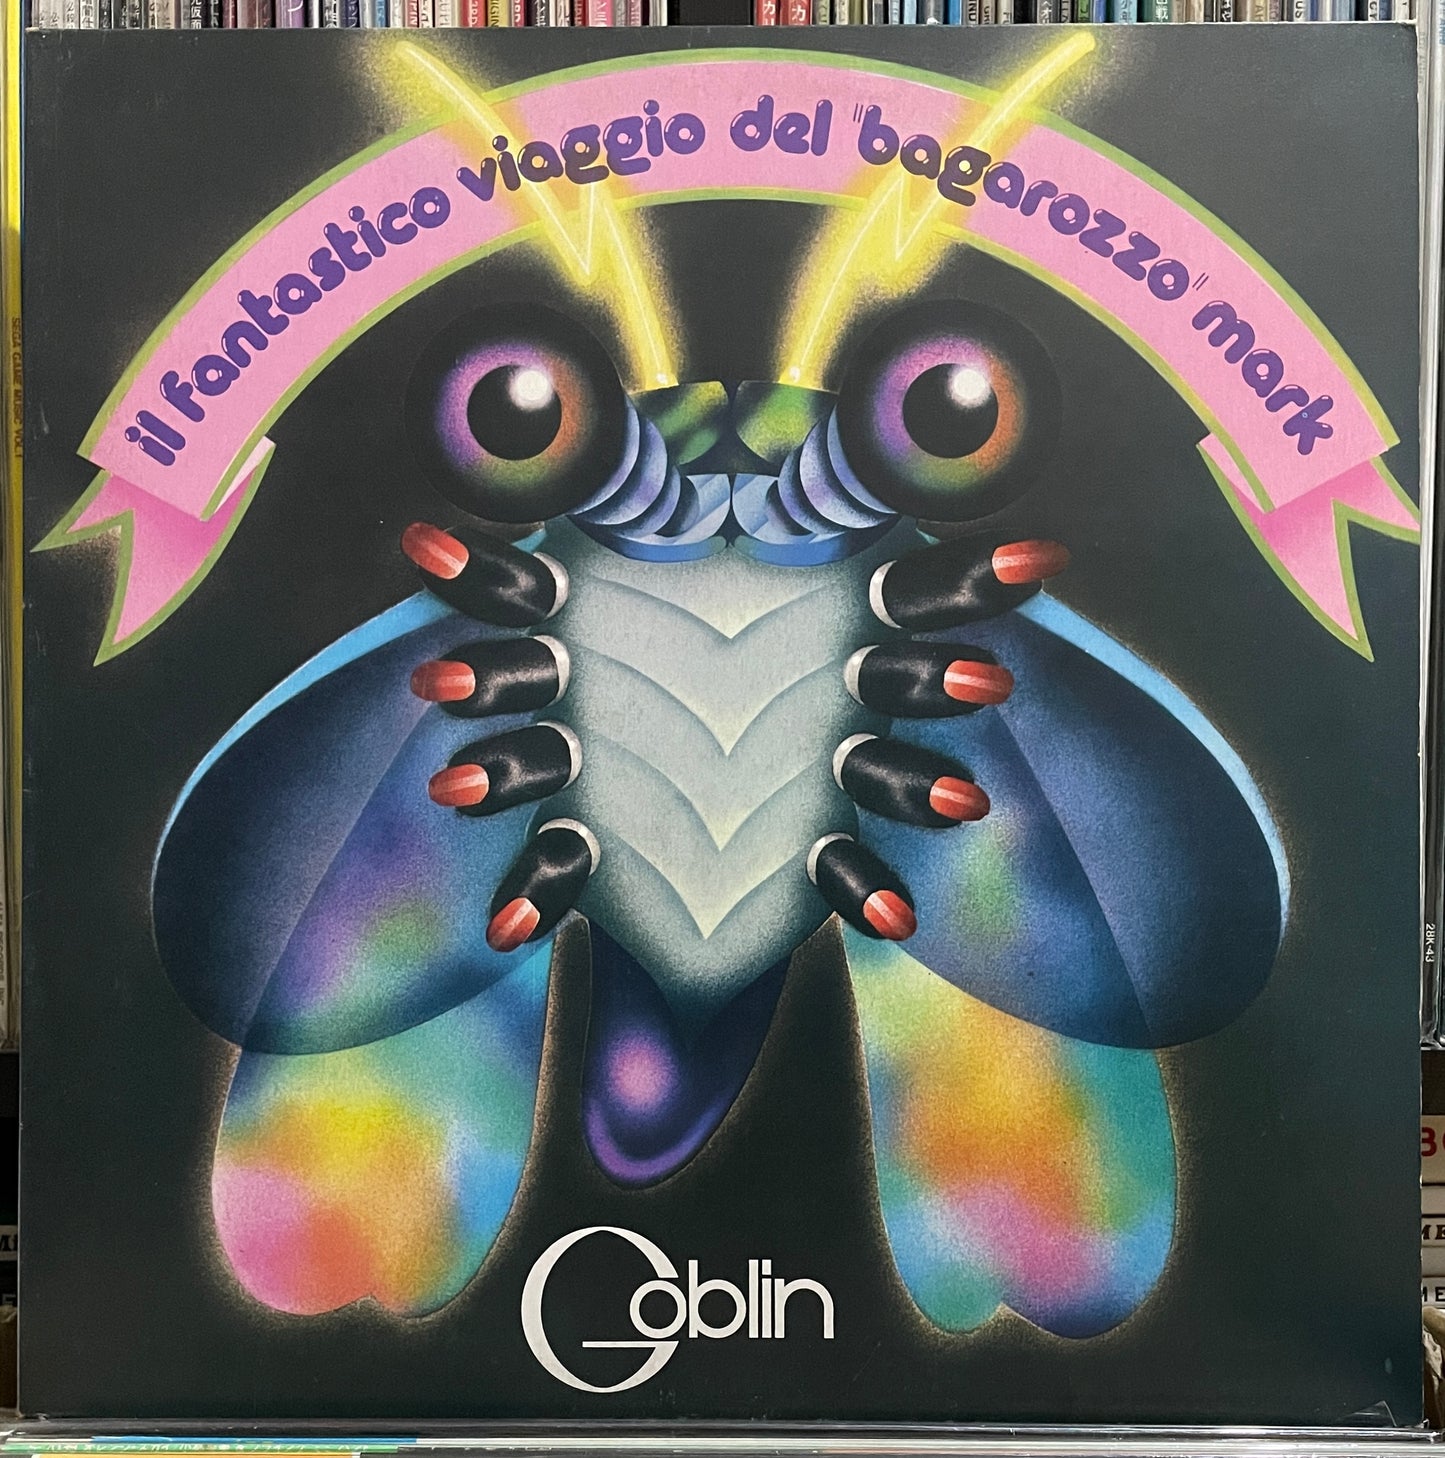 Goblin “Il Fantastico Viaggio Del Bagarozzo Mark (1978)